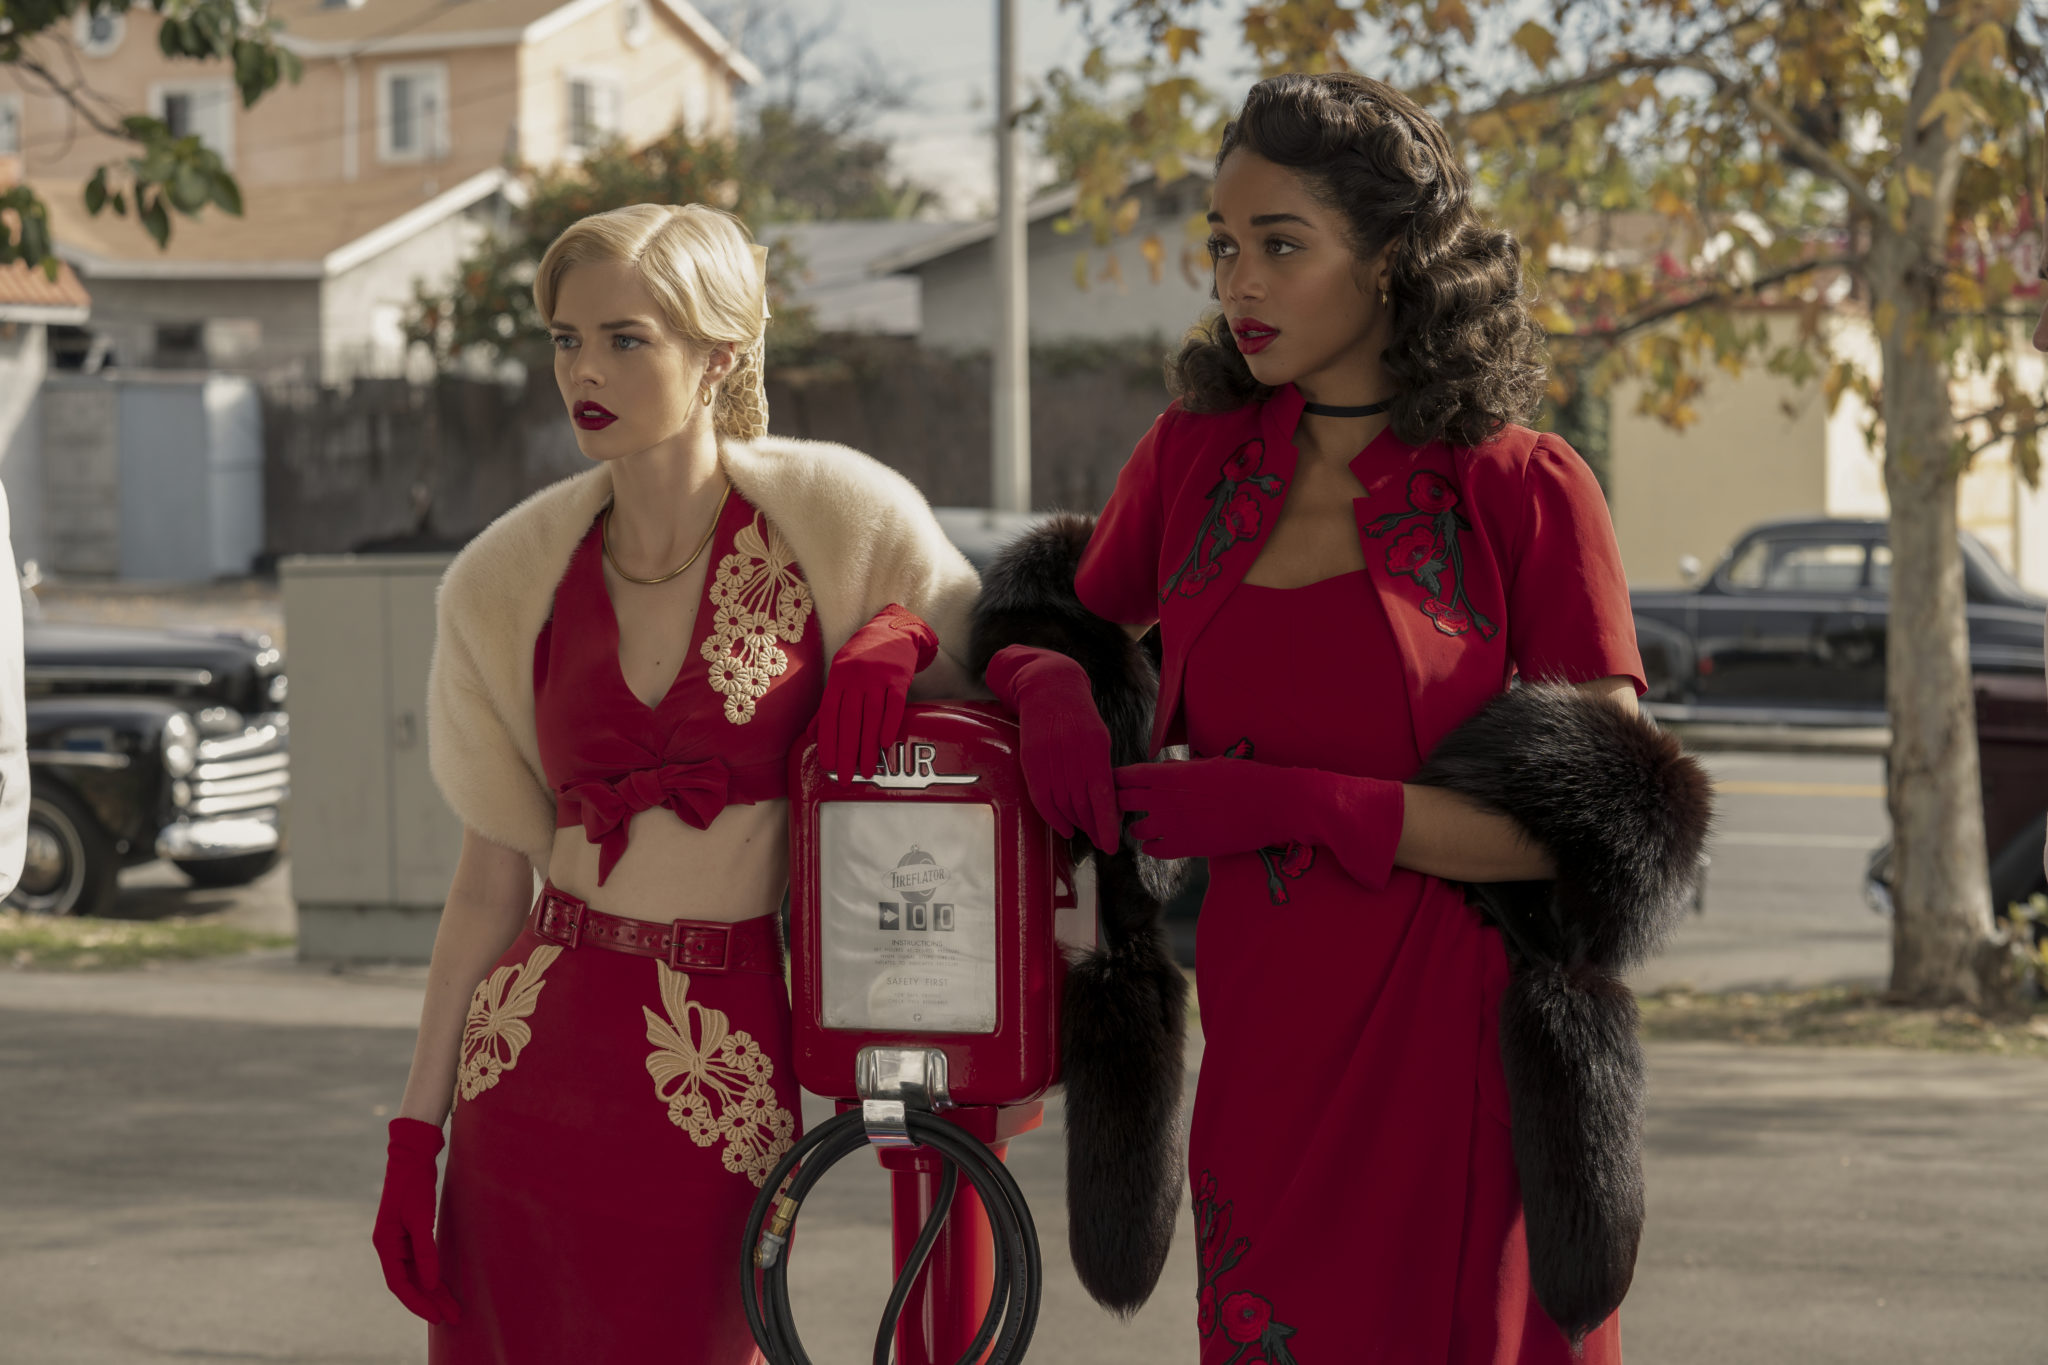 Die zwei angehende Schauspielerinnen Claire und Camille stehen zusammen auf einem Parkplatz in Hollywood